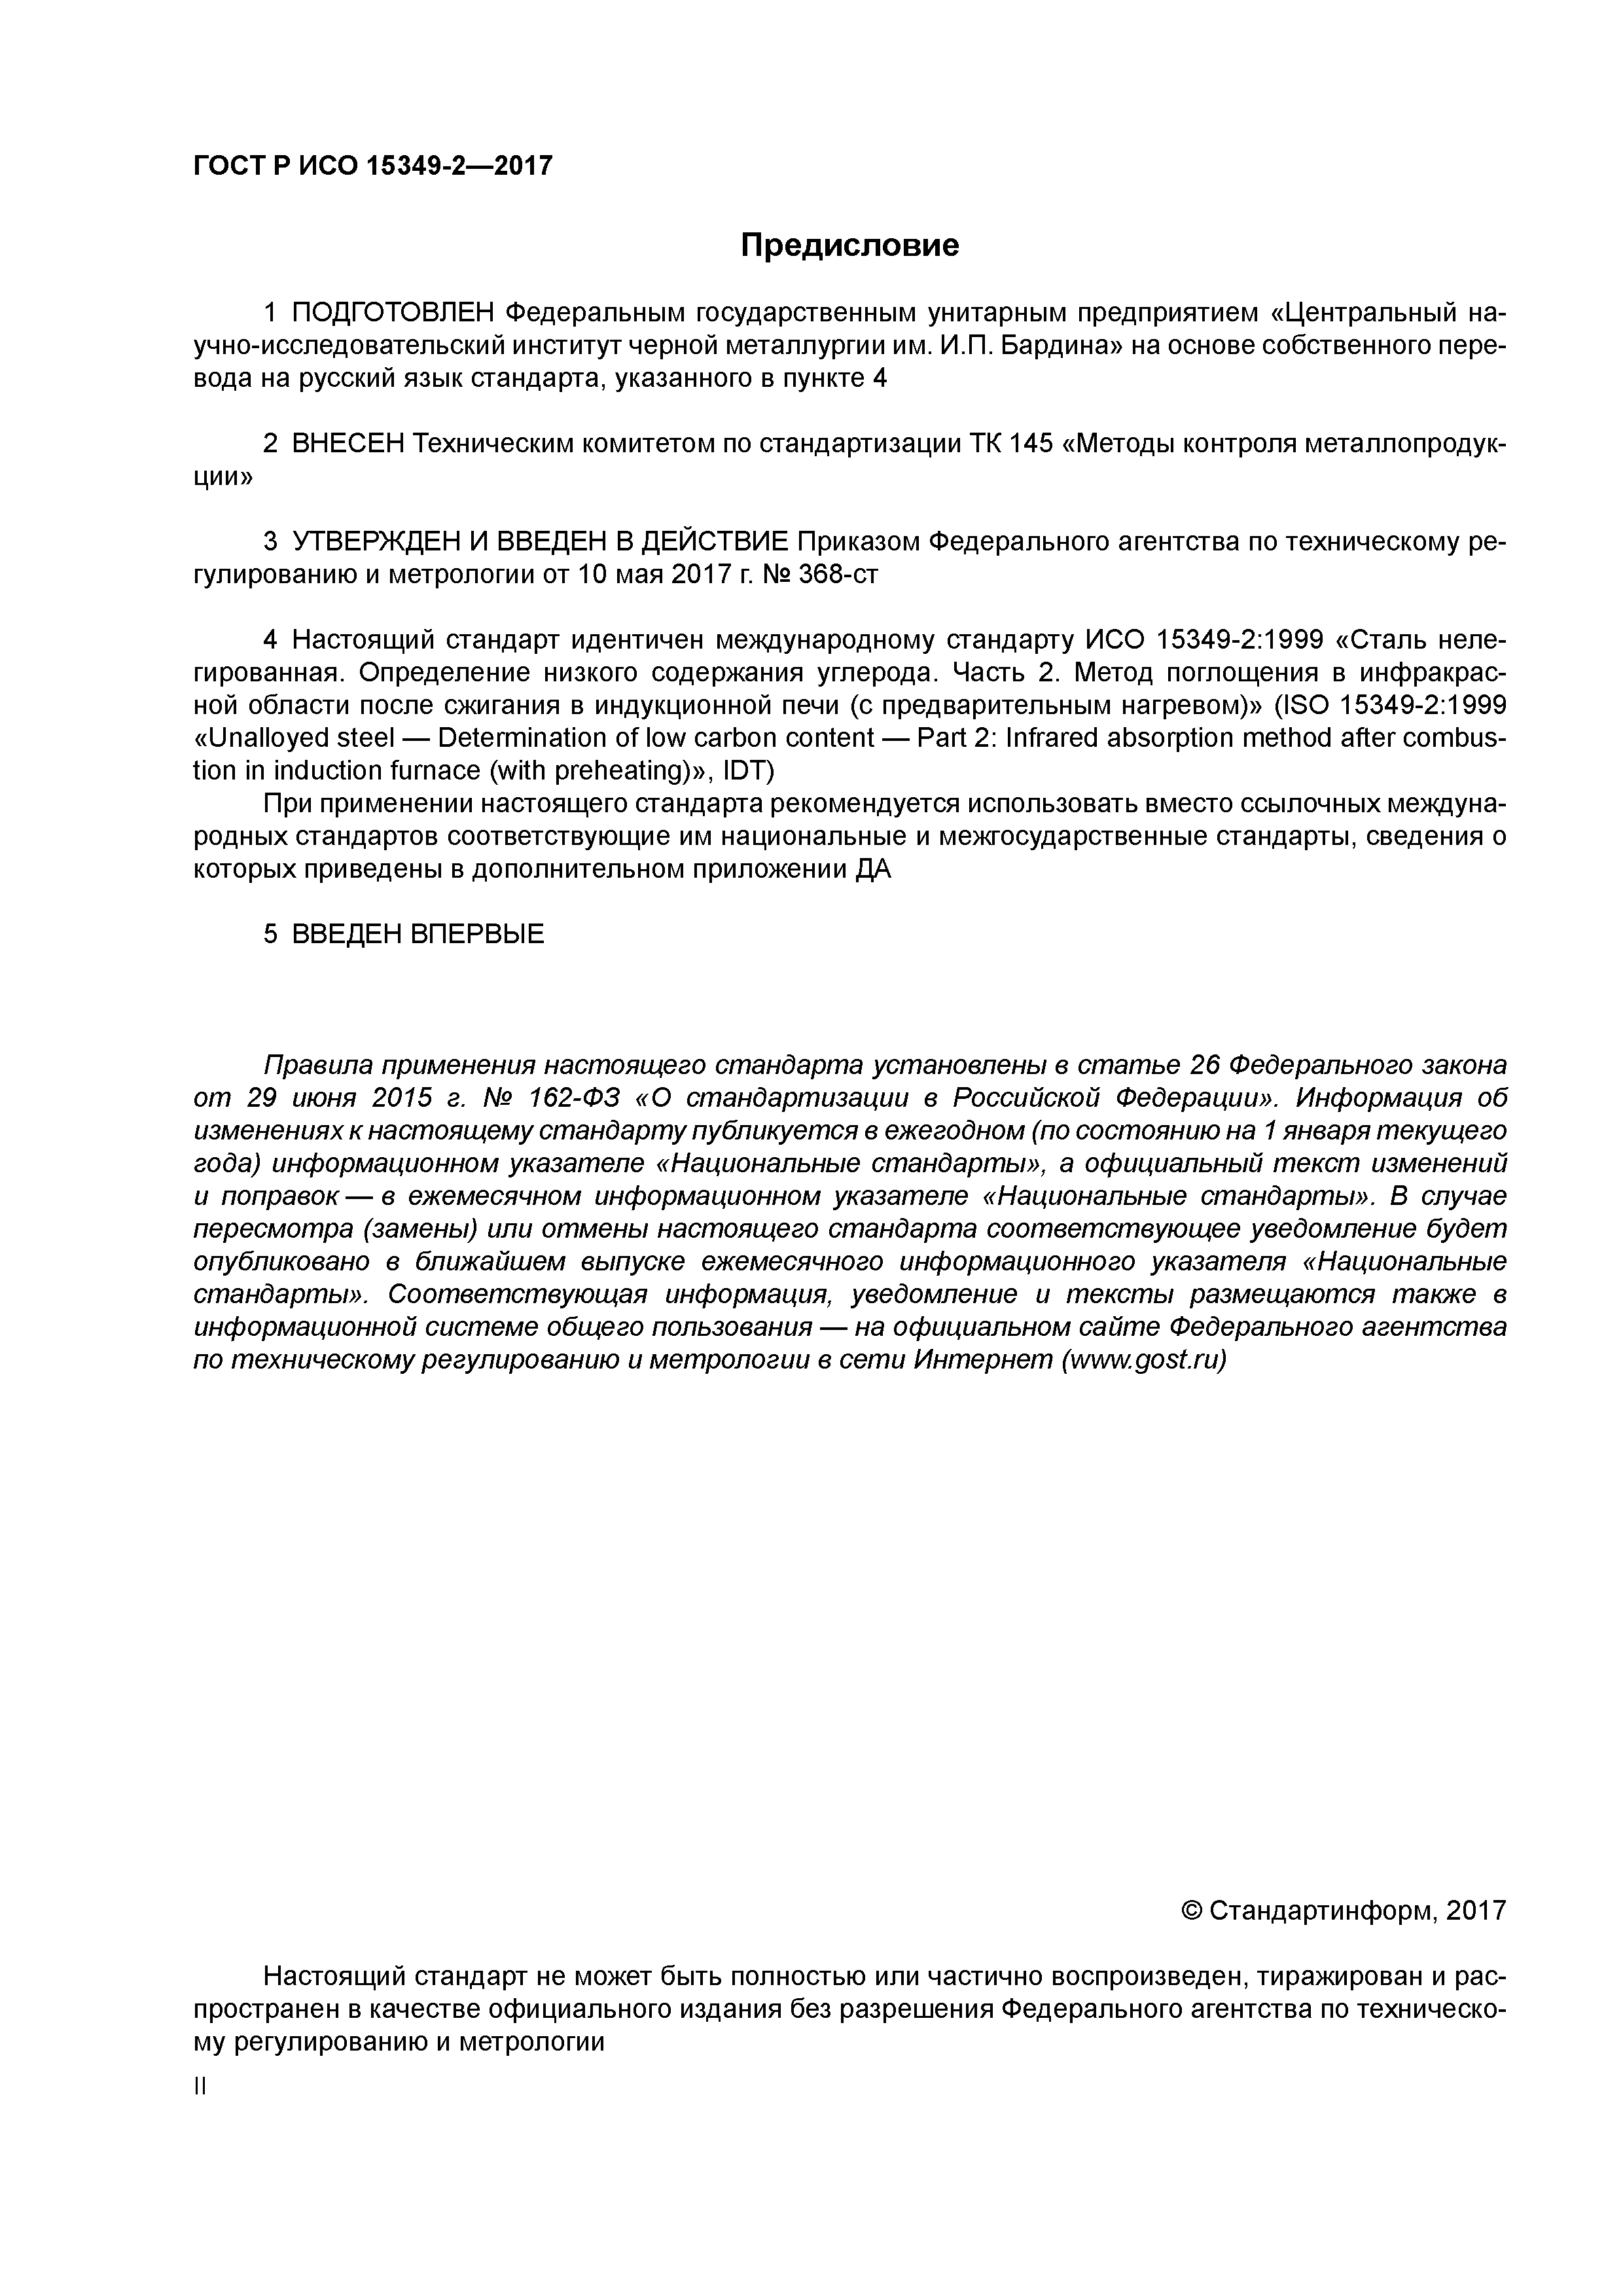 ГОСТ Р ИСО 15349-2-2017